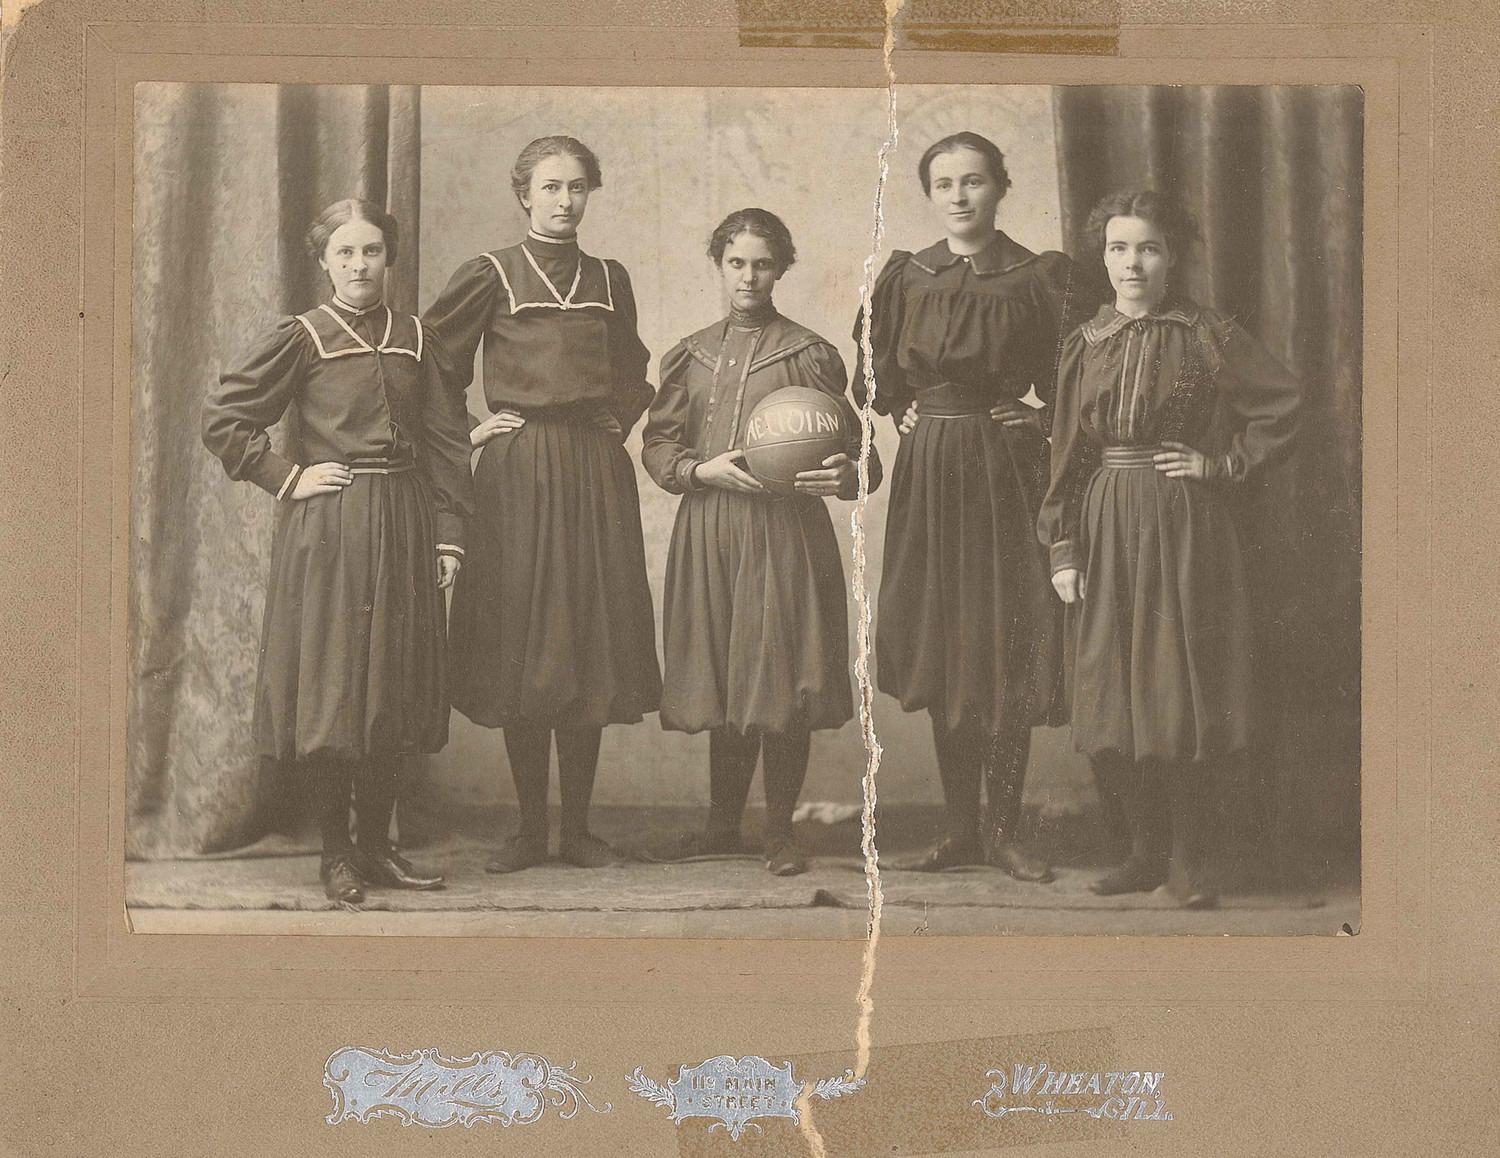 Wheaton Women's Basketball in 1899